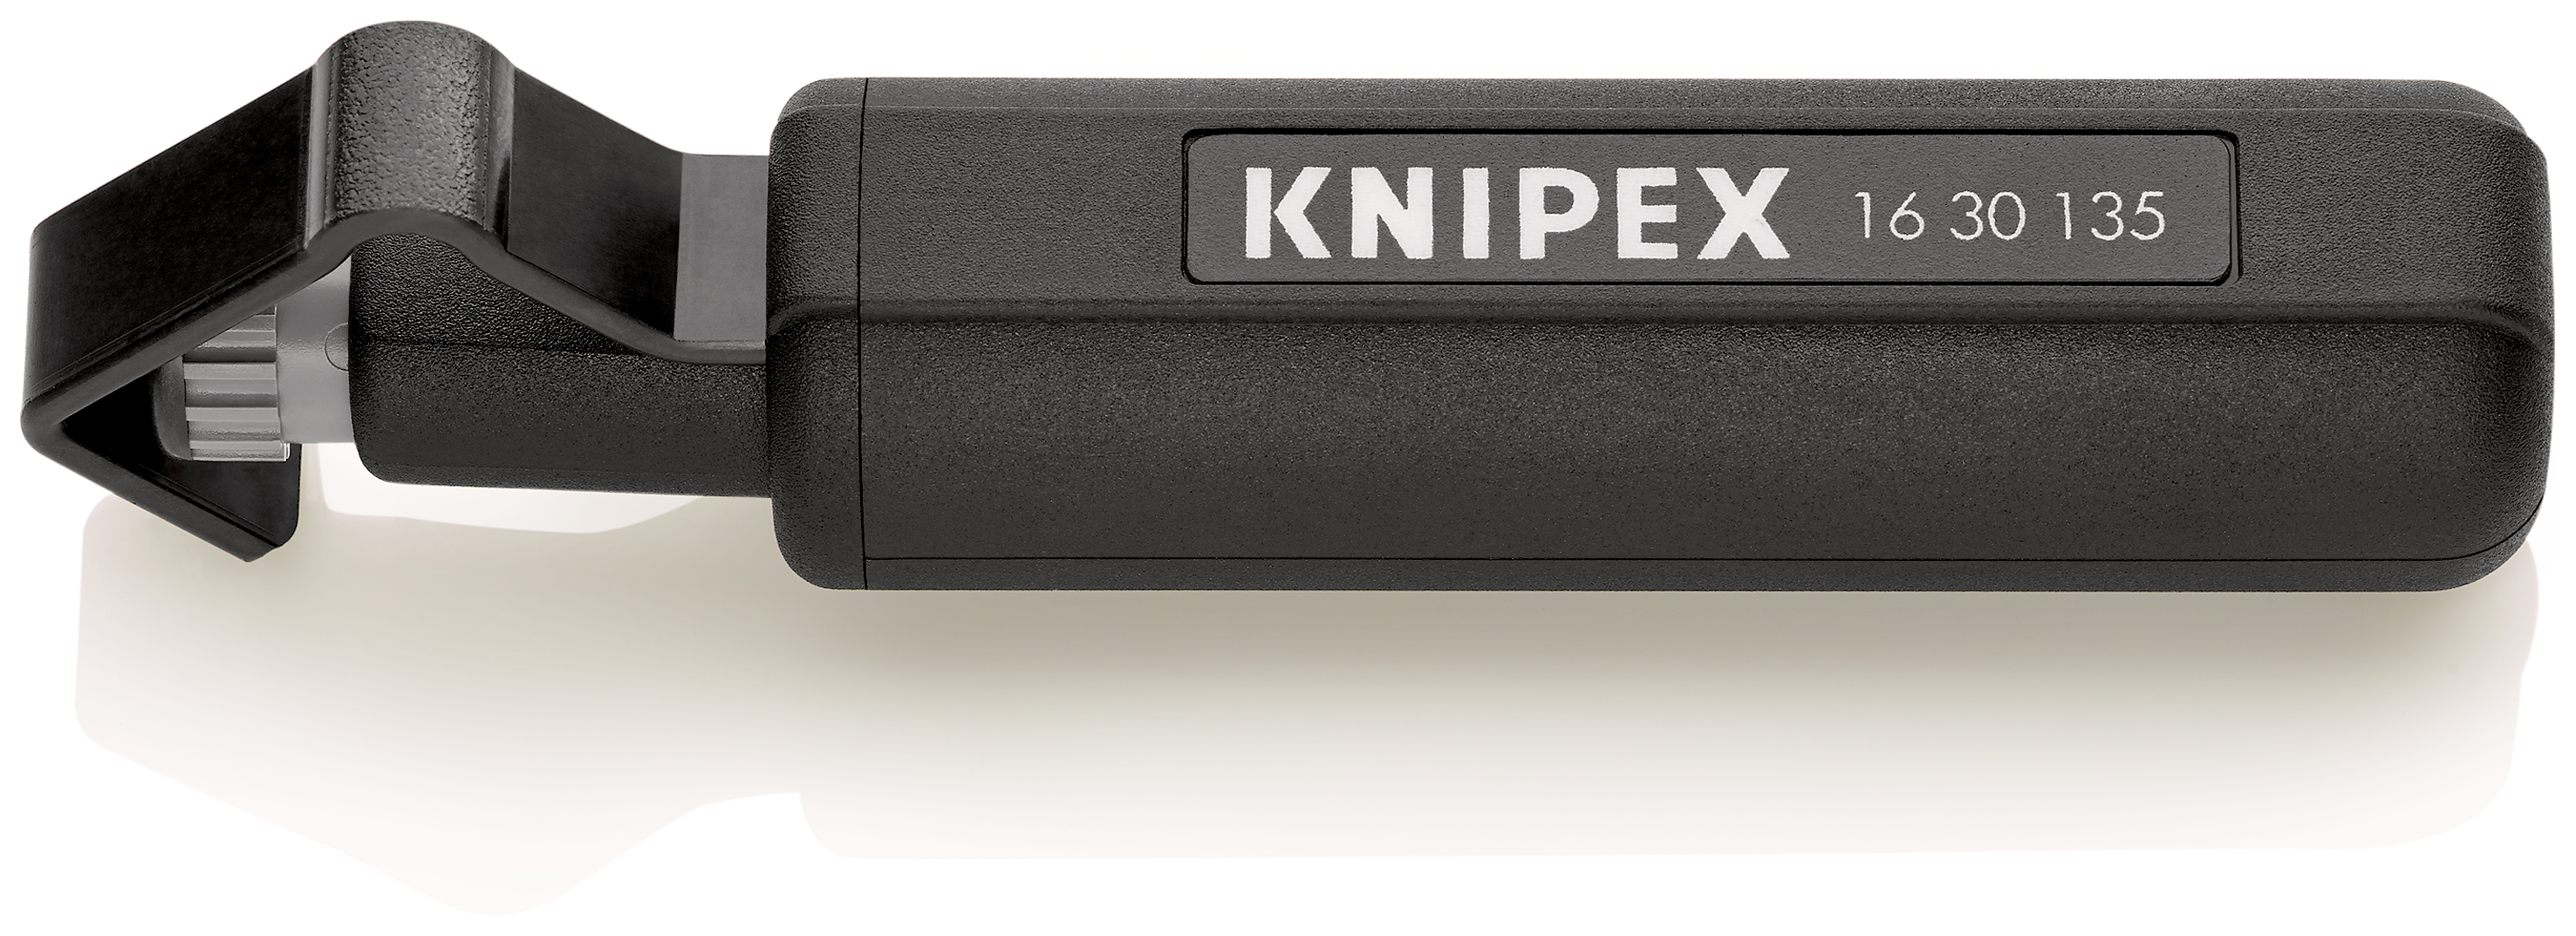 Knipex-Werk Abmantelungswerkzeug schlagfest, 135mm 16 30 135 SB